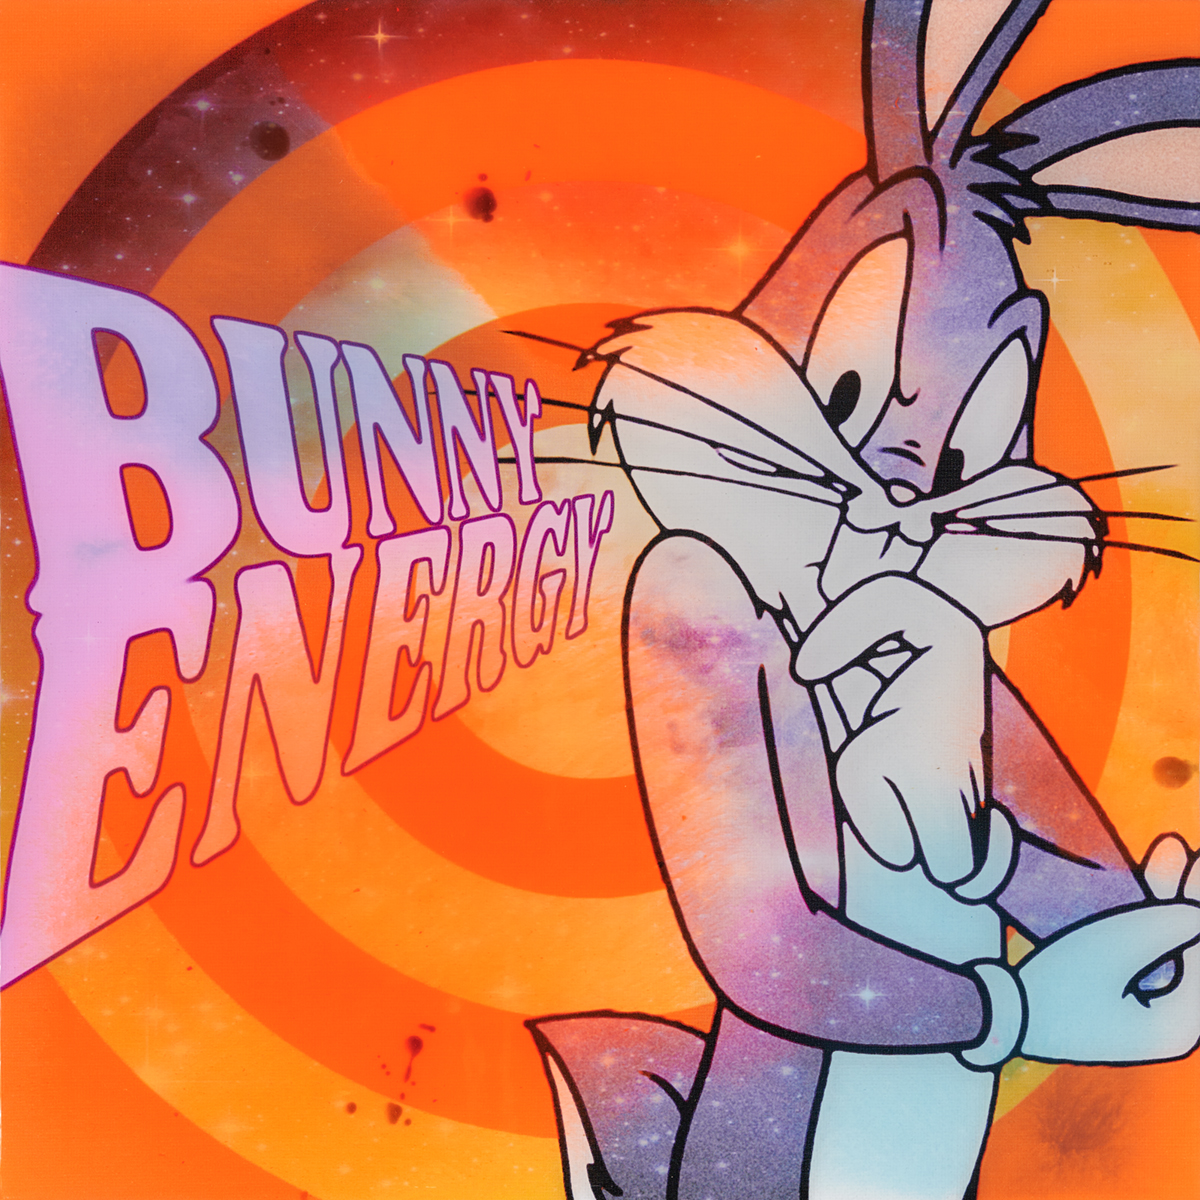 Bunny Energy - Epoxy - 2020